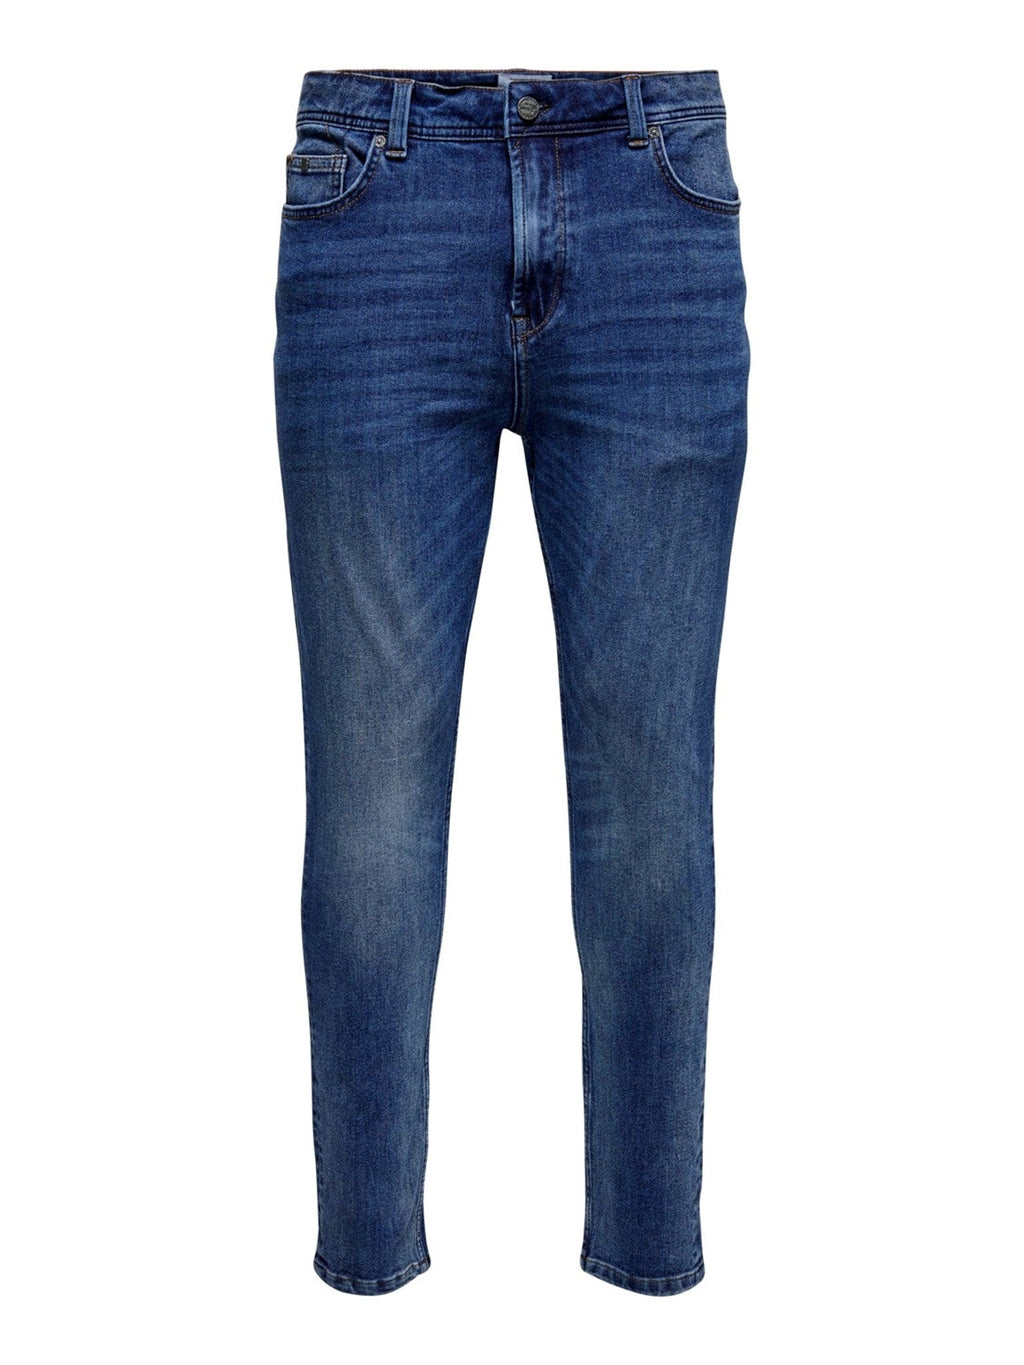 Webstuhl Slim Jeans - Blue Denim